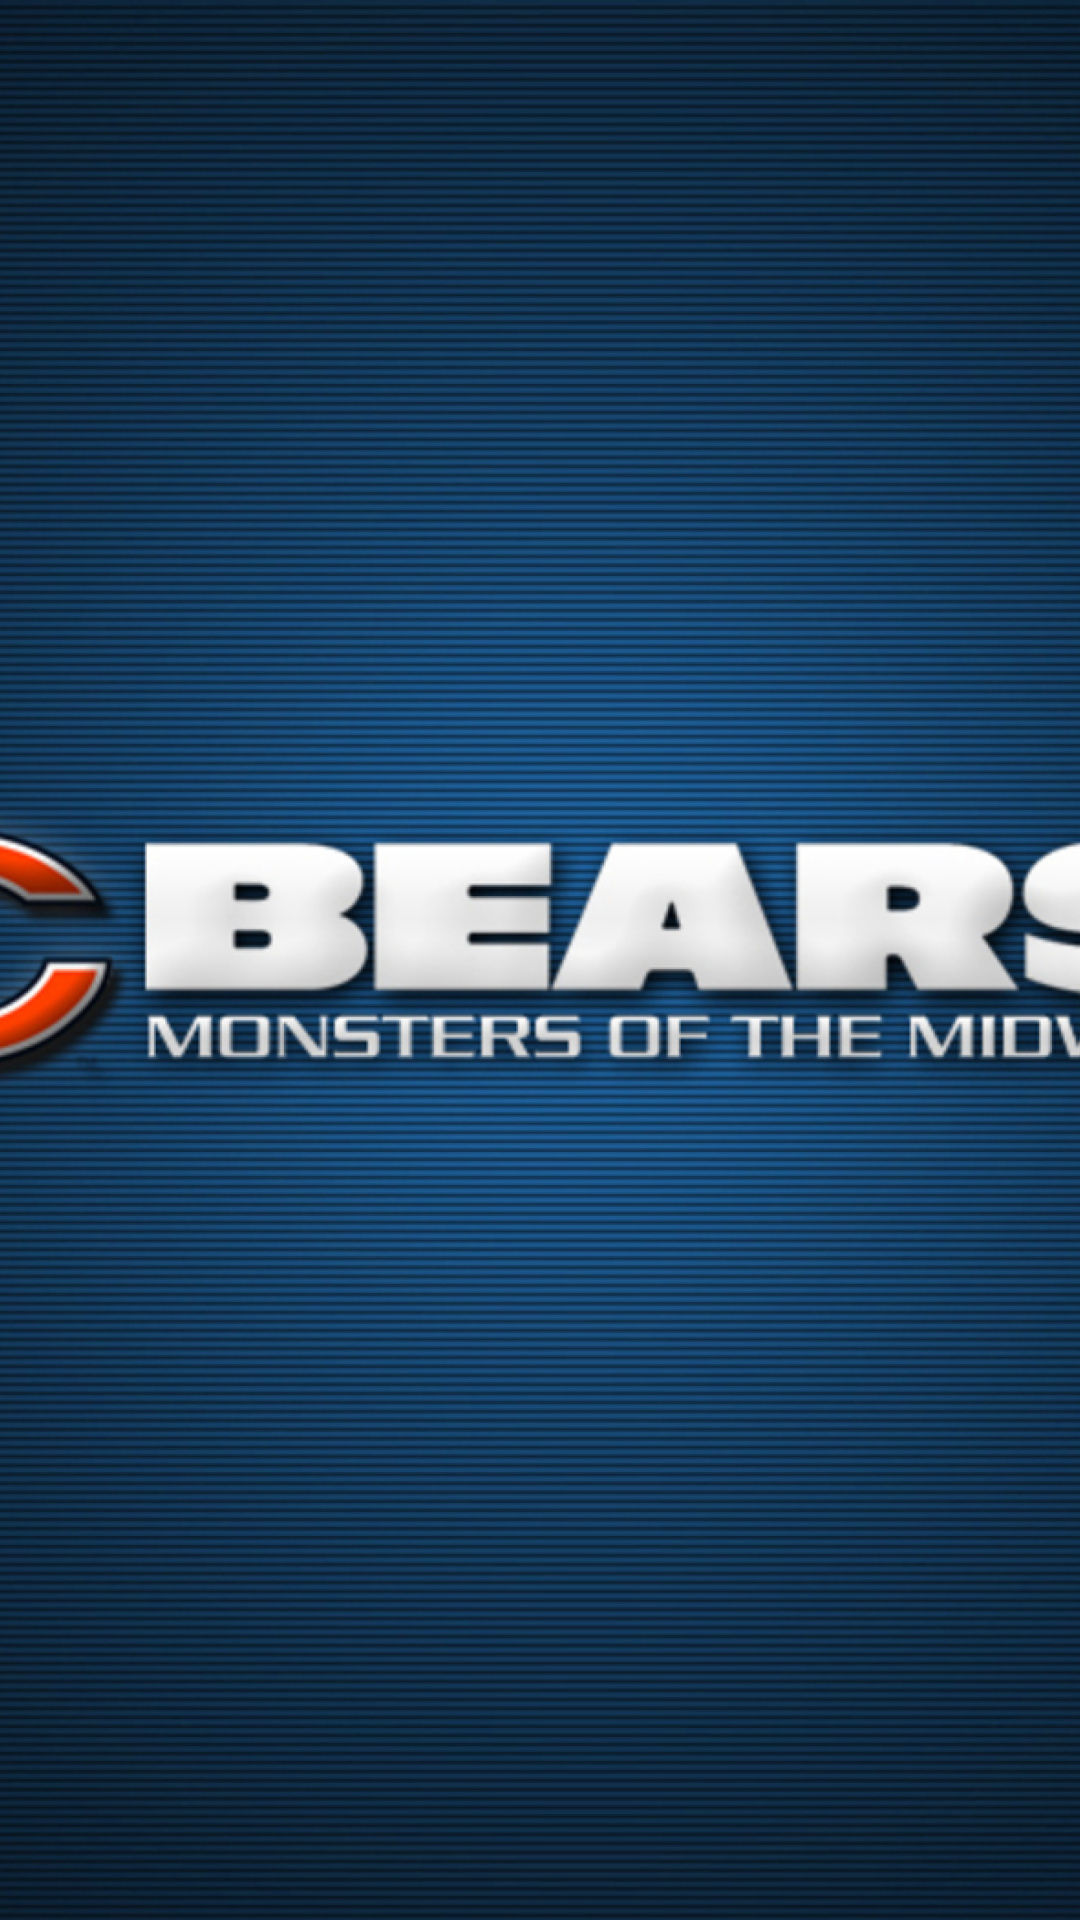 Chicago Bears NFL League wallpaper 1080x1920